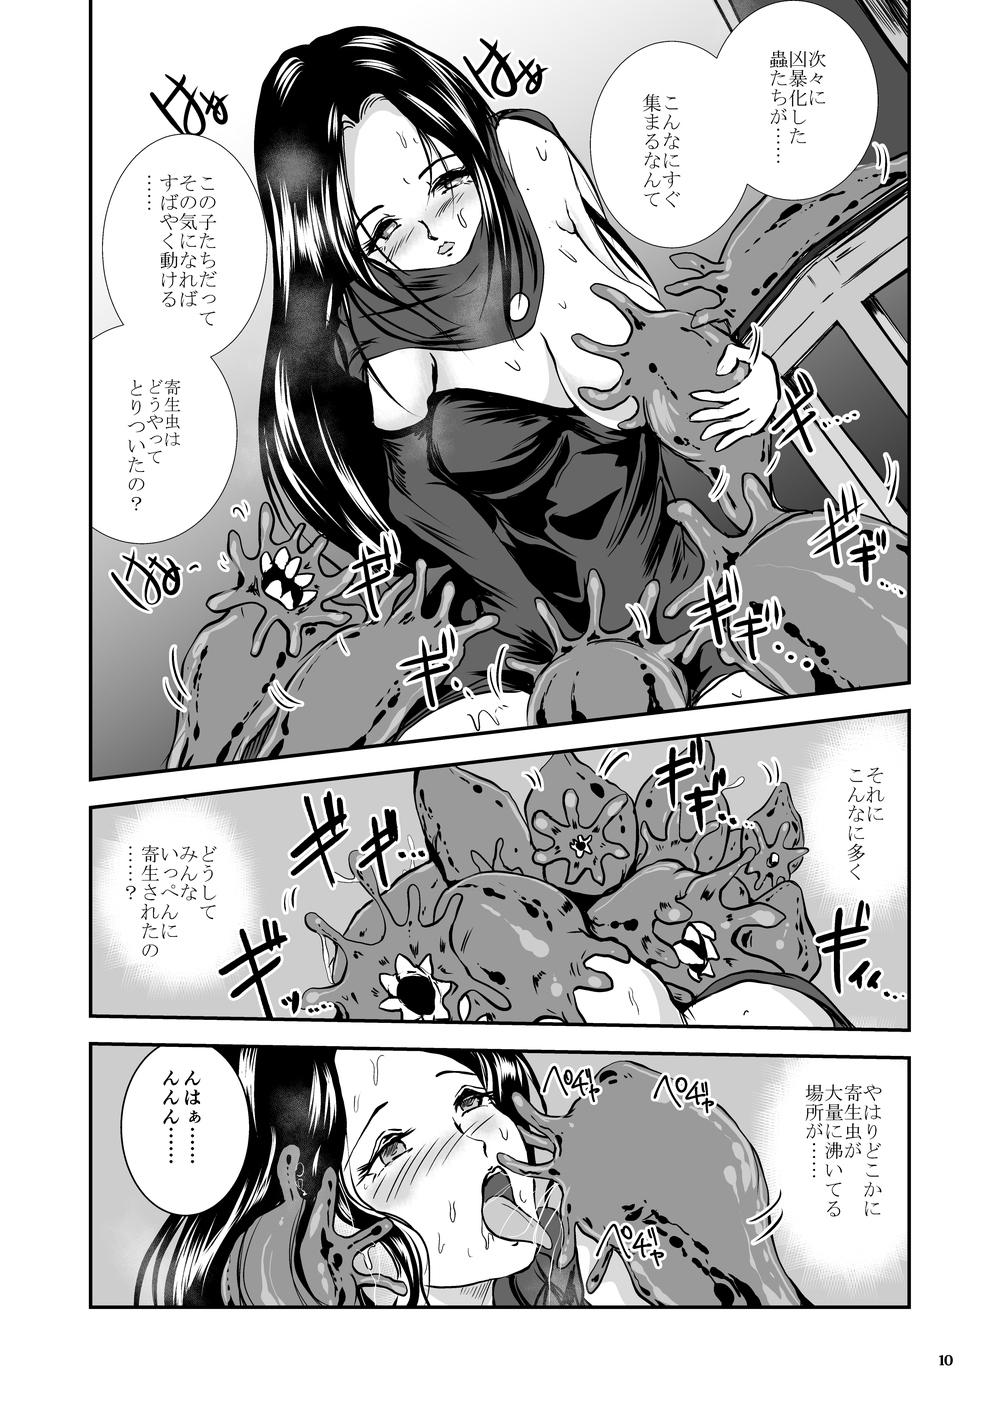 Oonamekuji to Kurokami no Mahoutsukai - Parasitized Giant Slugs V.S. Sorceress of the Black Hair as Aura 56